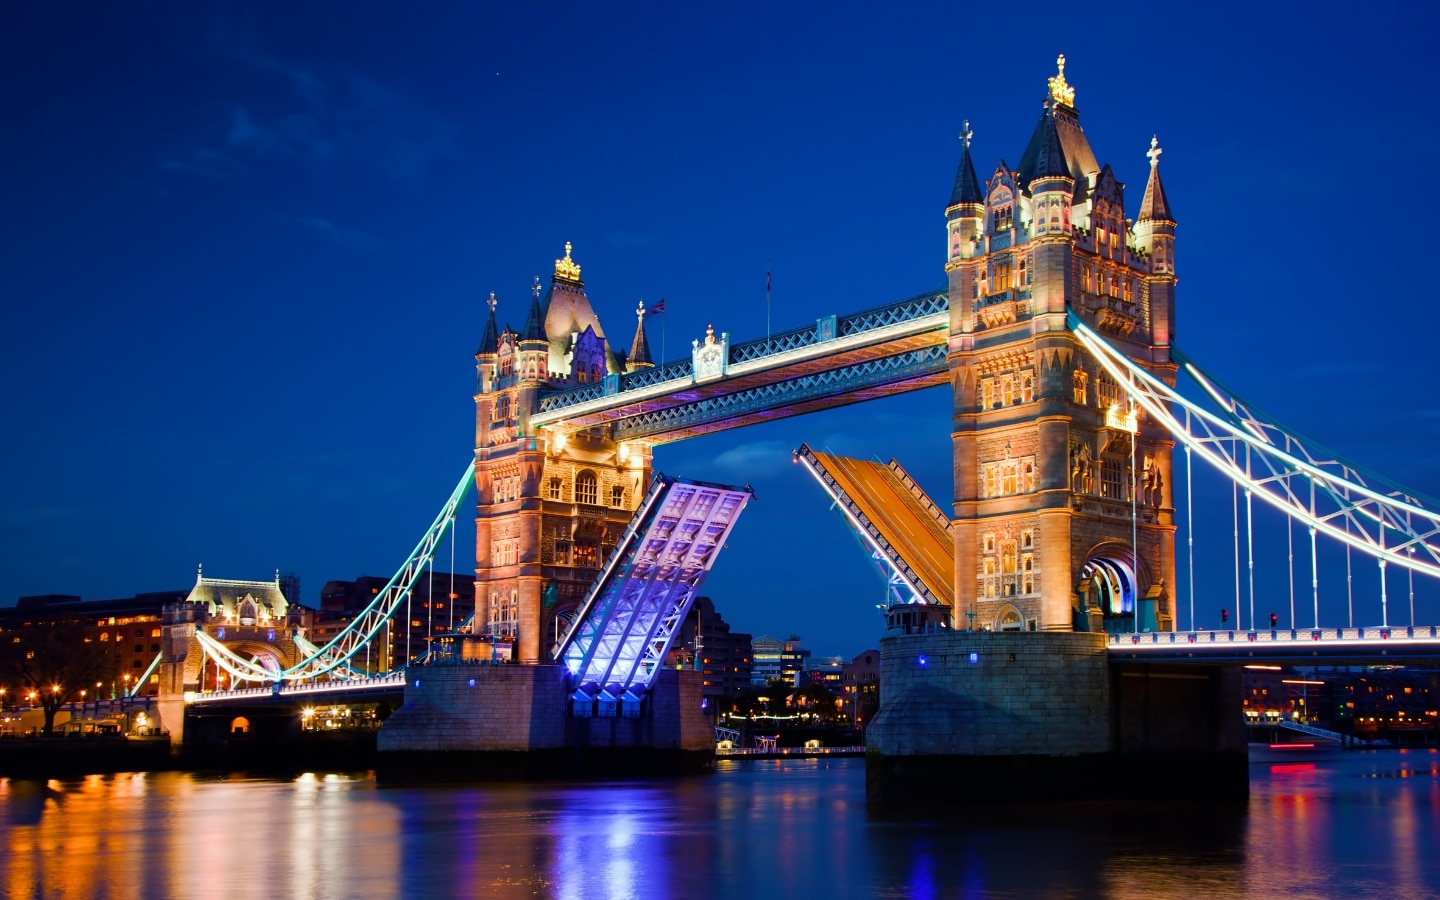 Iconic Tower Bridge